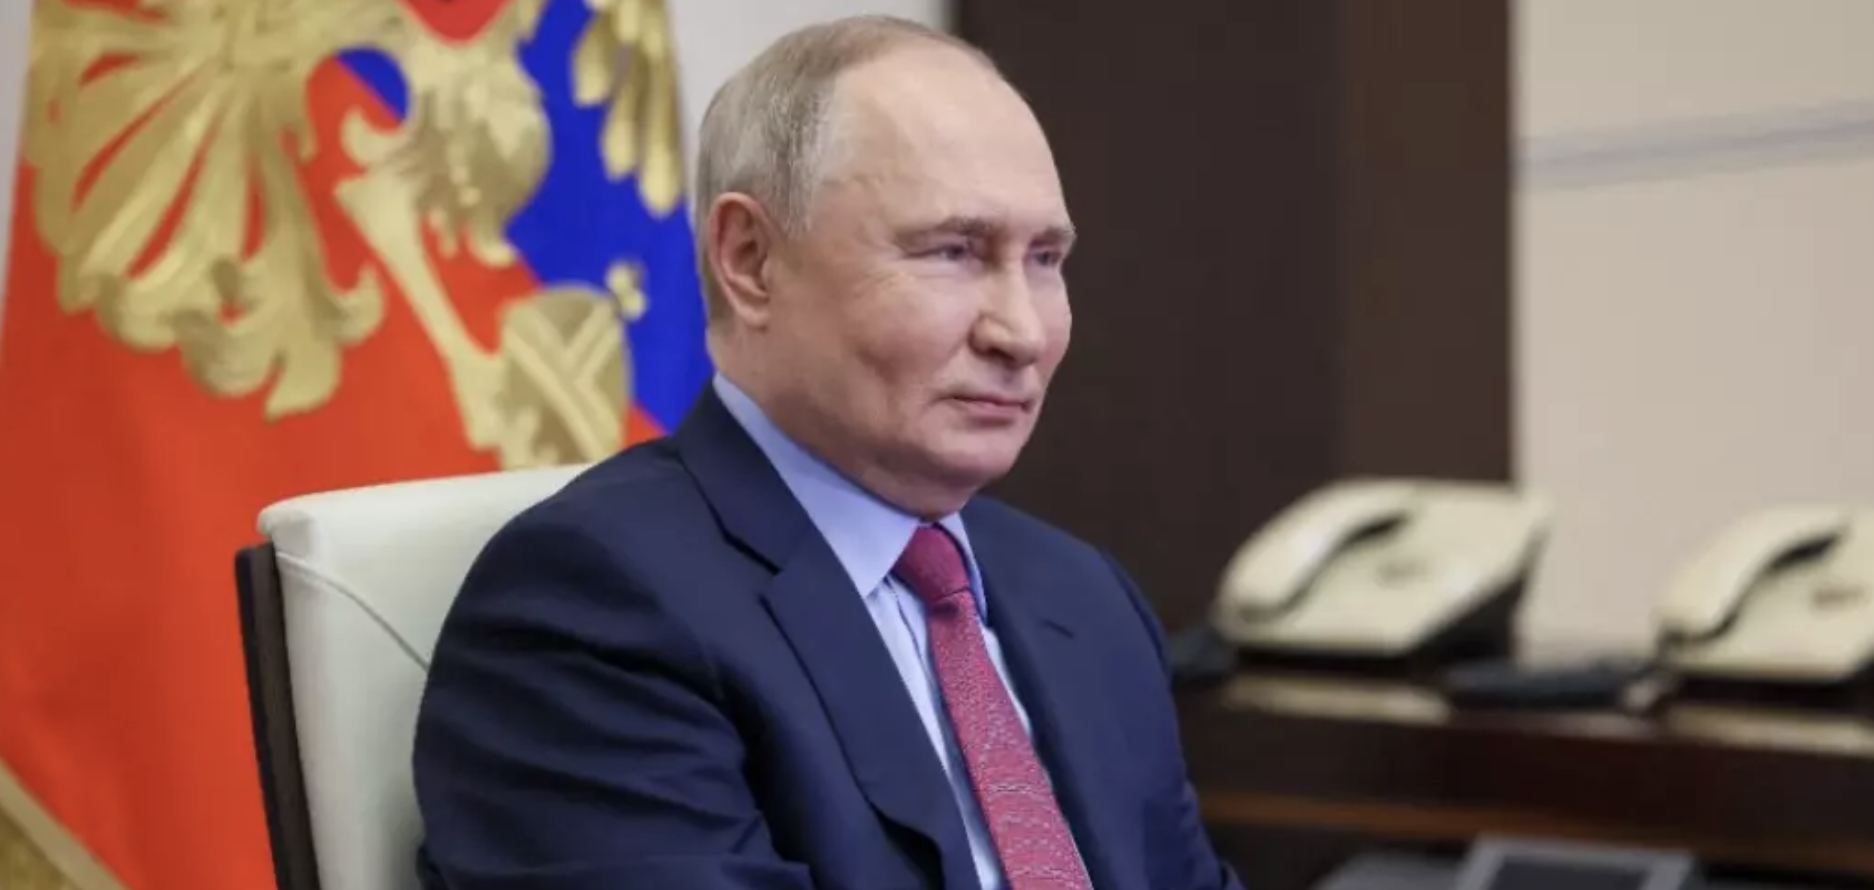 Présidentielle en Russie : Vladimir Poutine réélu avec plus de 87% des voix selon un sondage